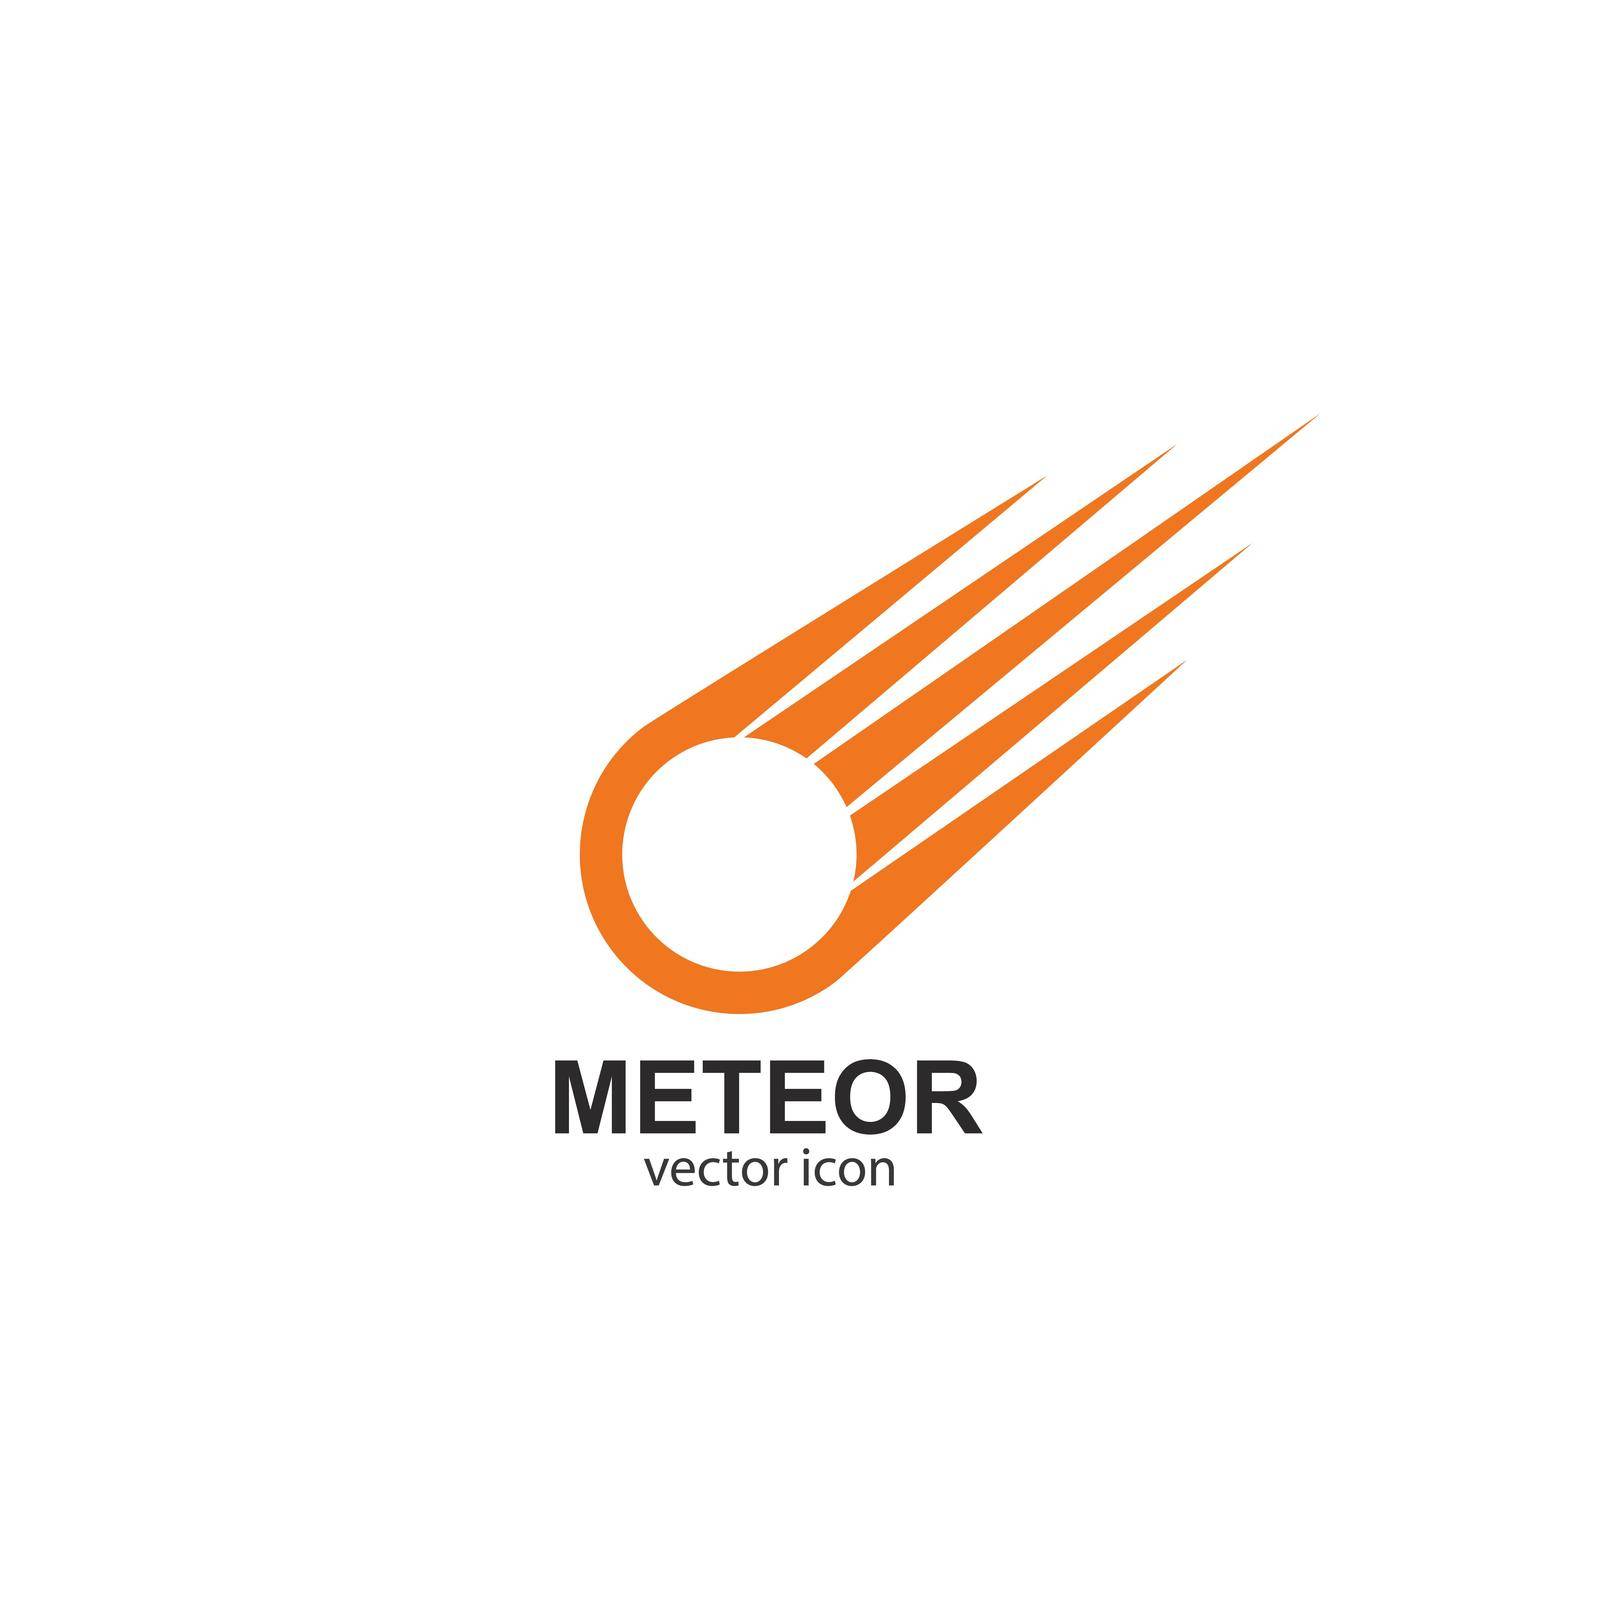 meteor logo vector template design